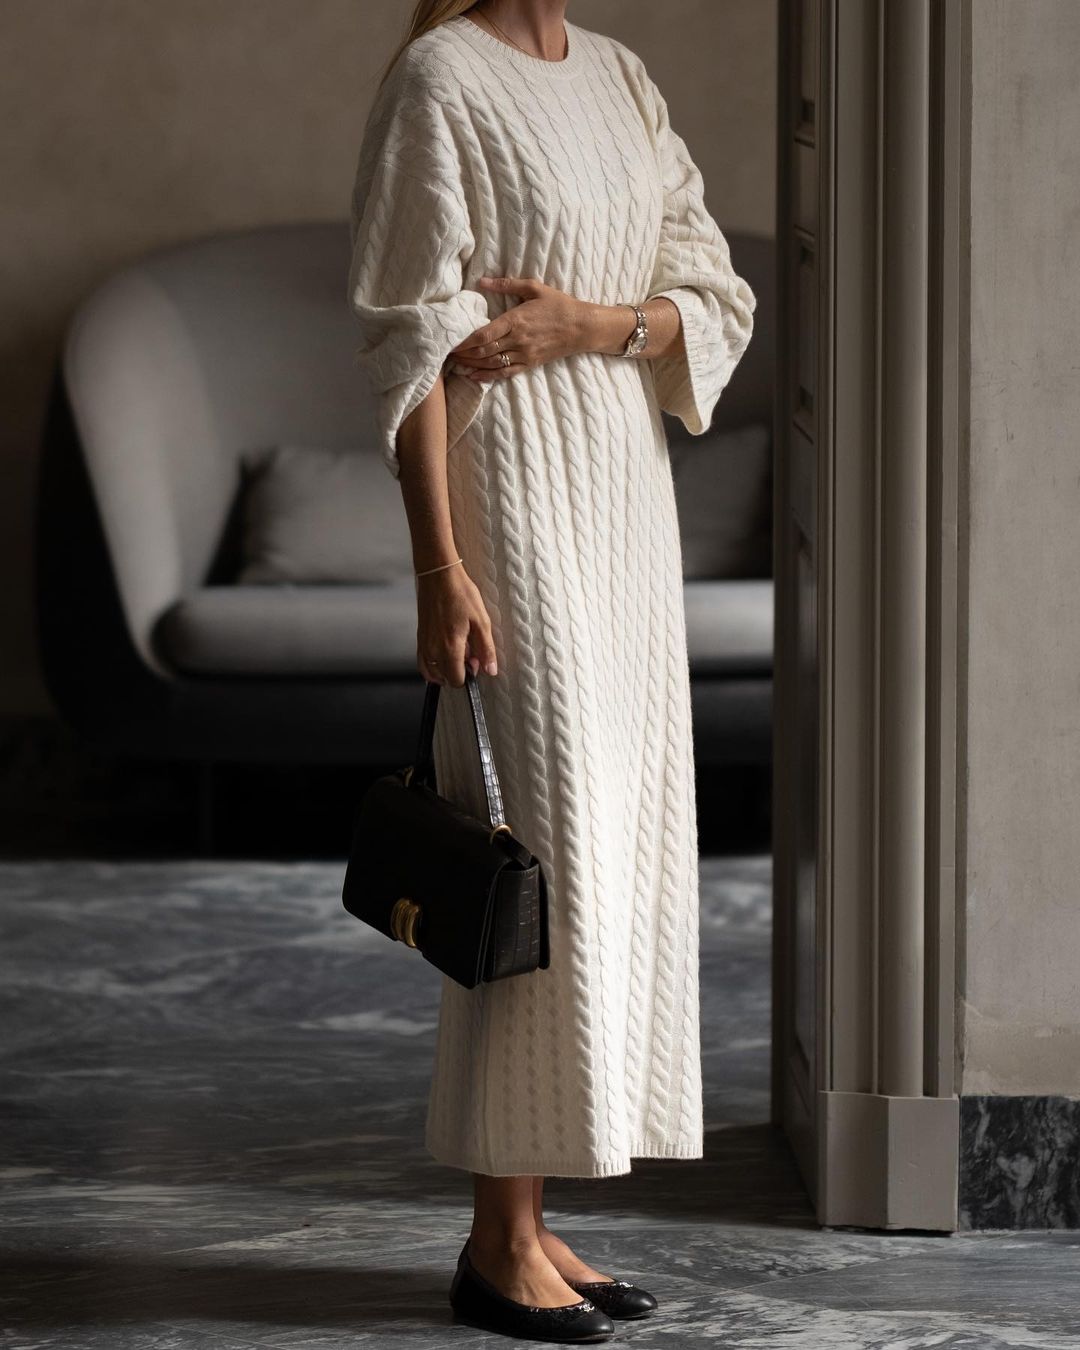 Pletena haljina idealan je jesenski komad. Izdvajamo 26 modela iz trenutne ponude